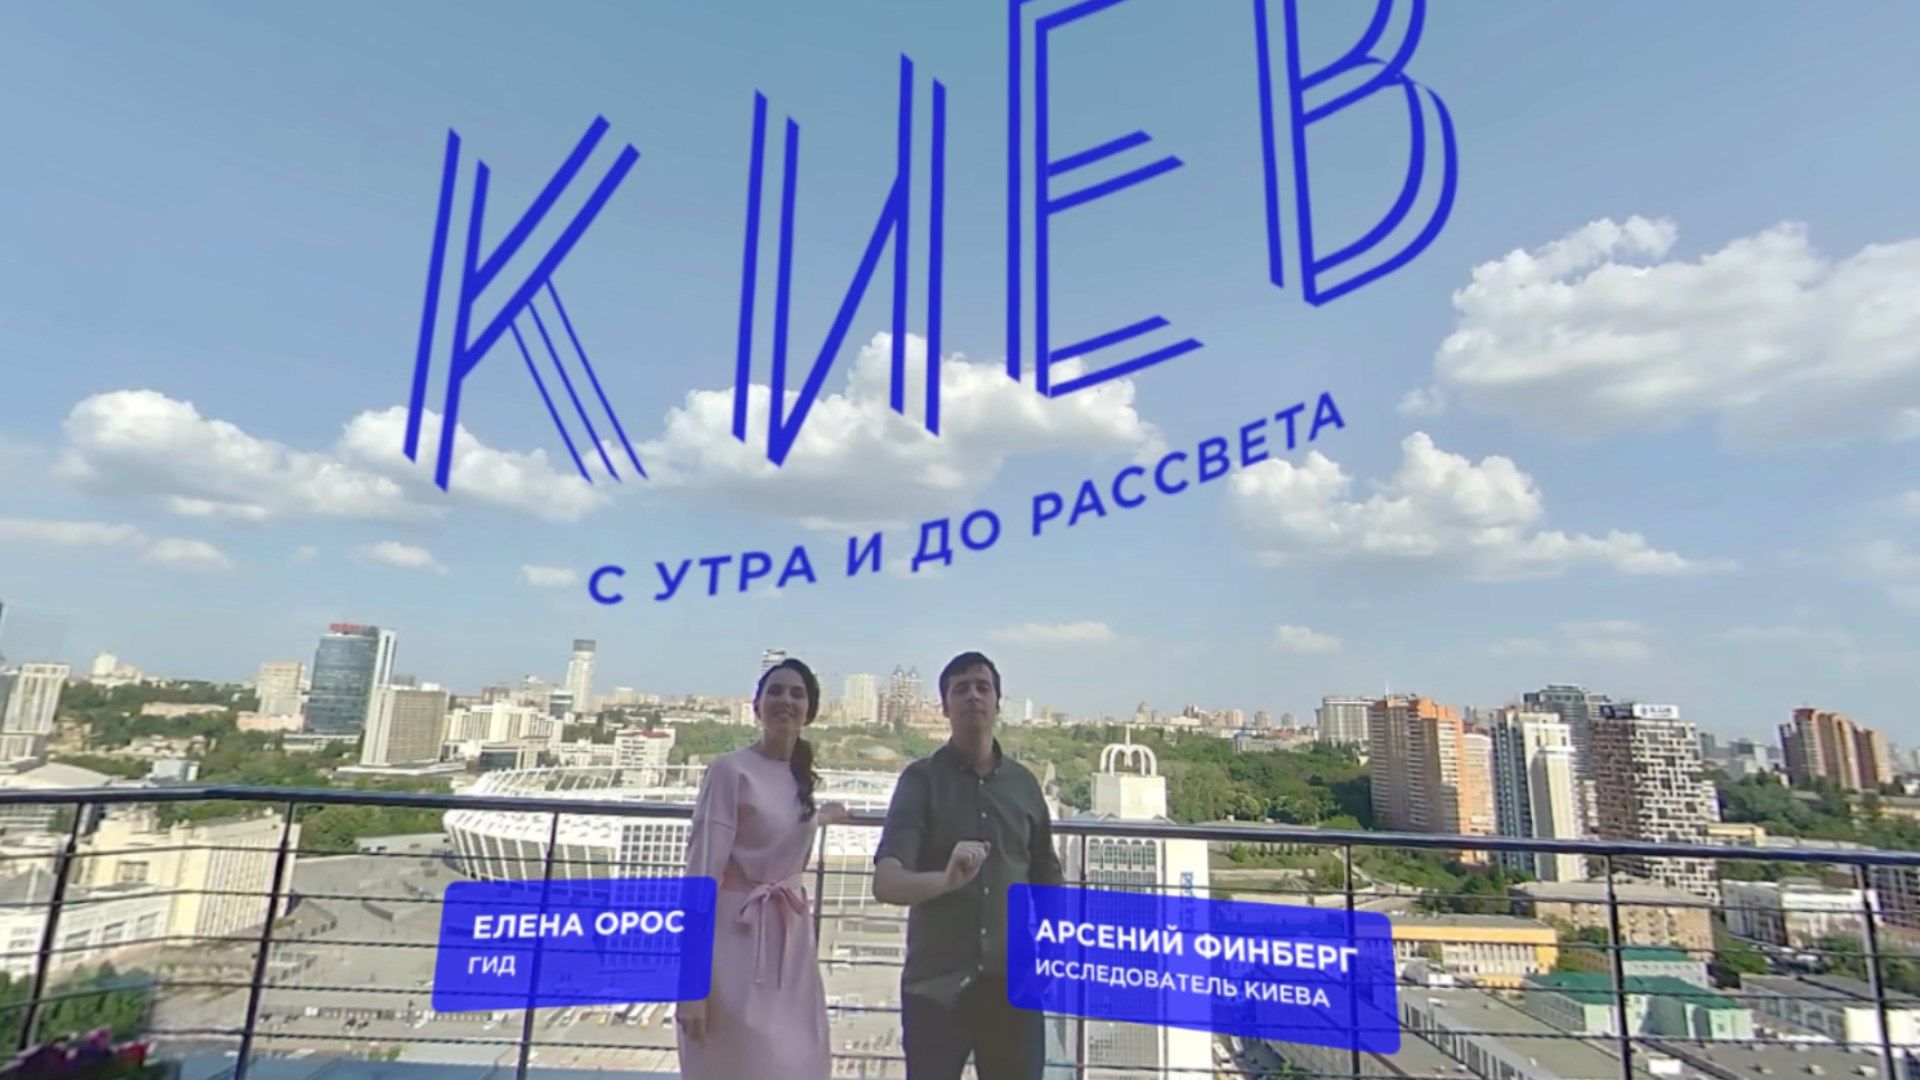 Киев: с утра и до рассвета c Lenovo Explorer